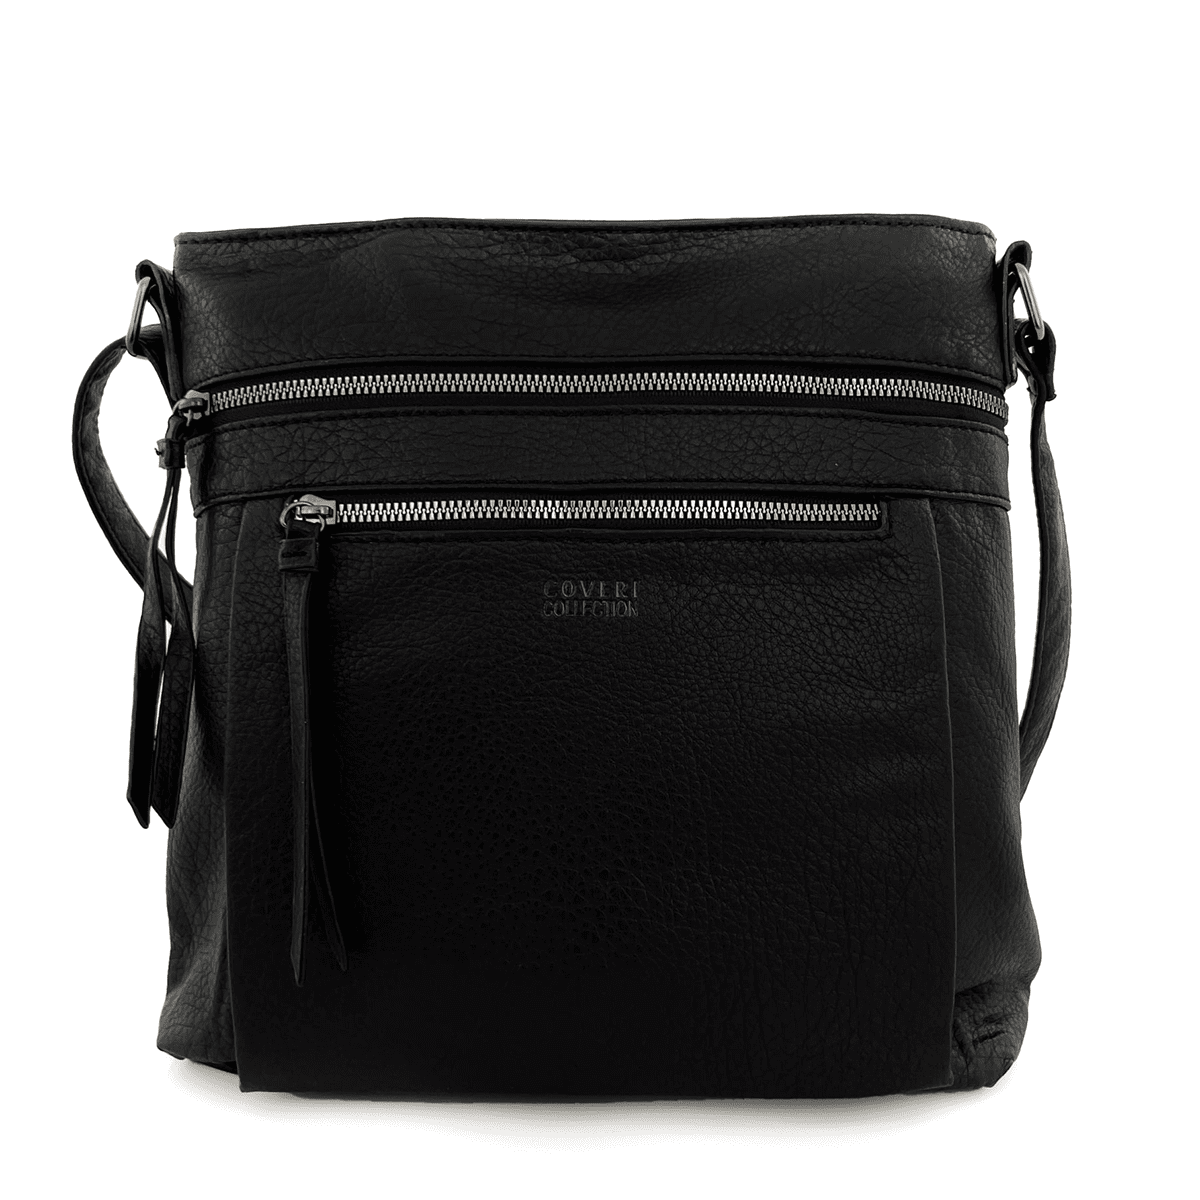 Дамска чанта за през рамо - черна